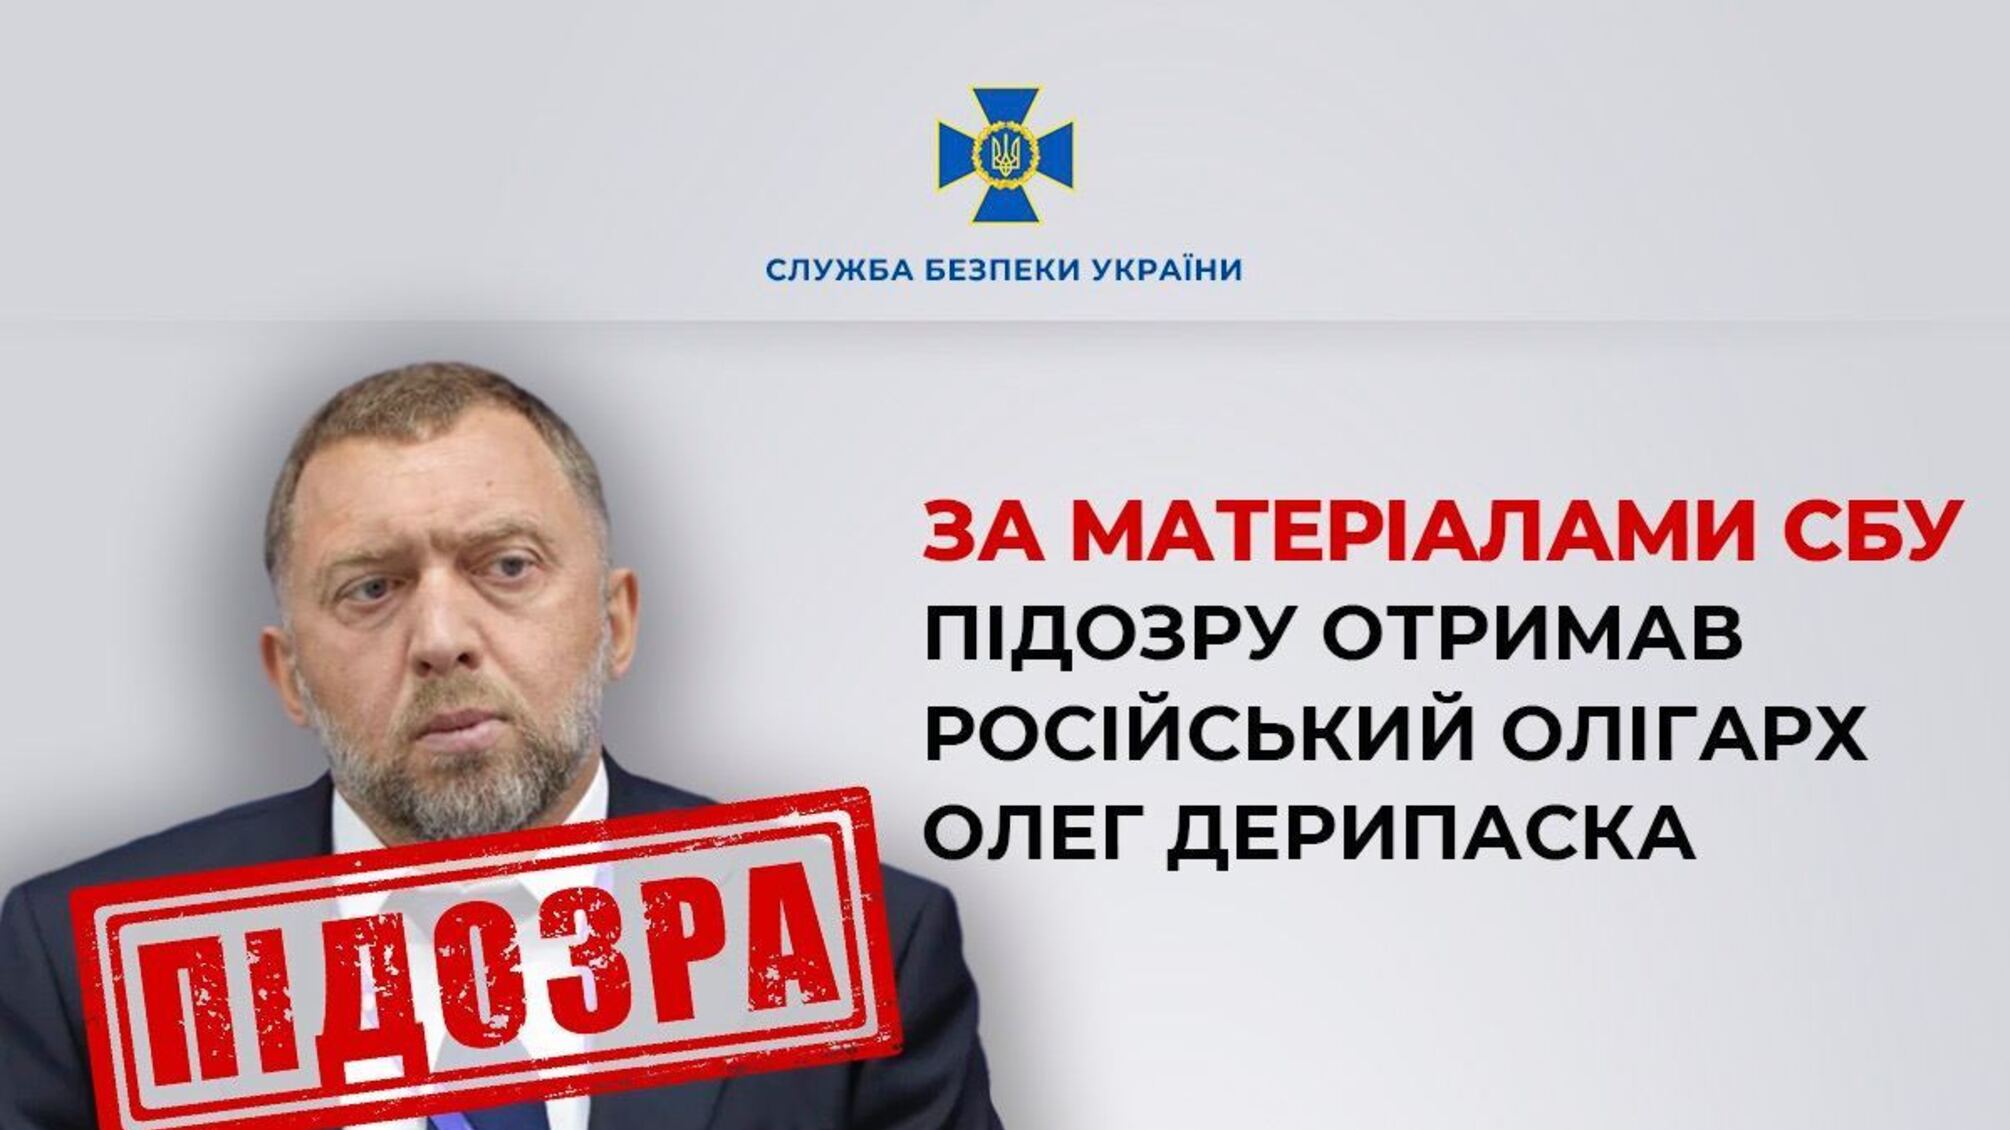 СБУ сообщила о подозрении российскому олигарху Дерипаске и задержала его украинских топ-менеджеров